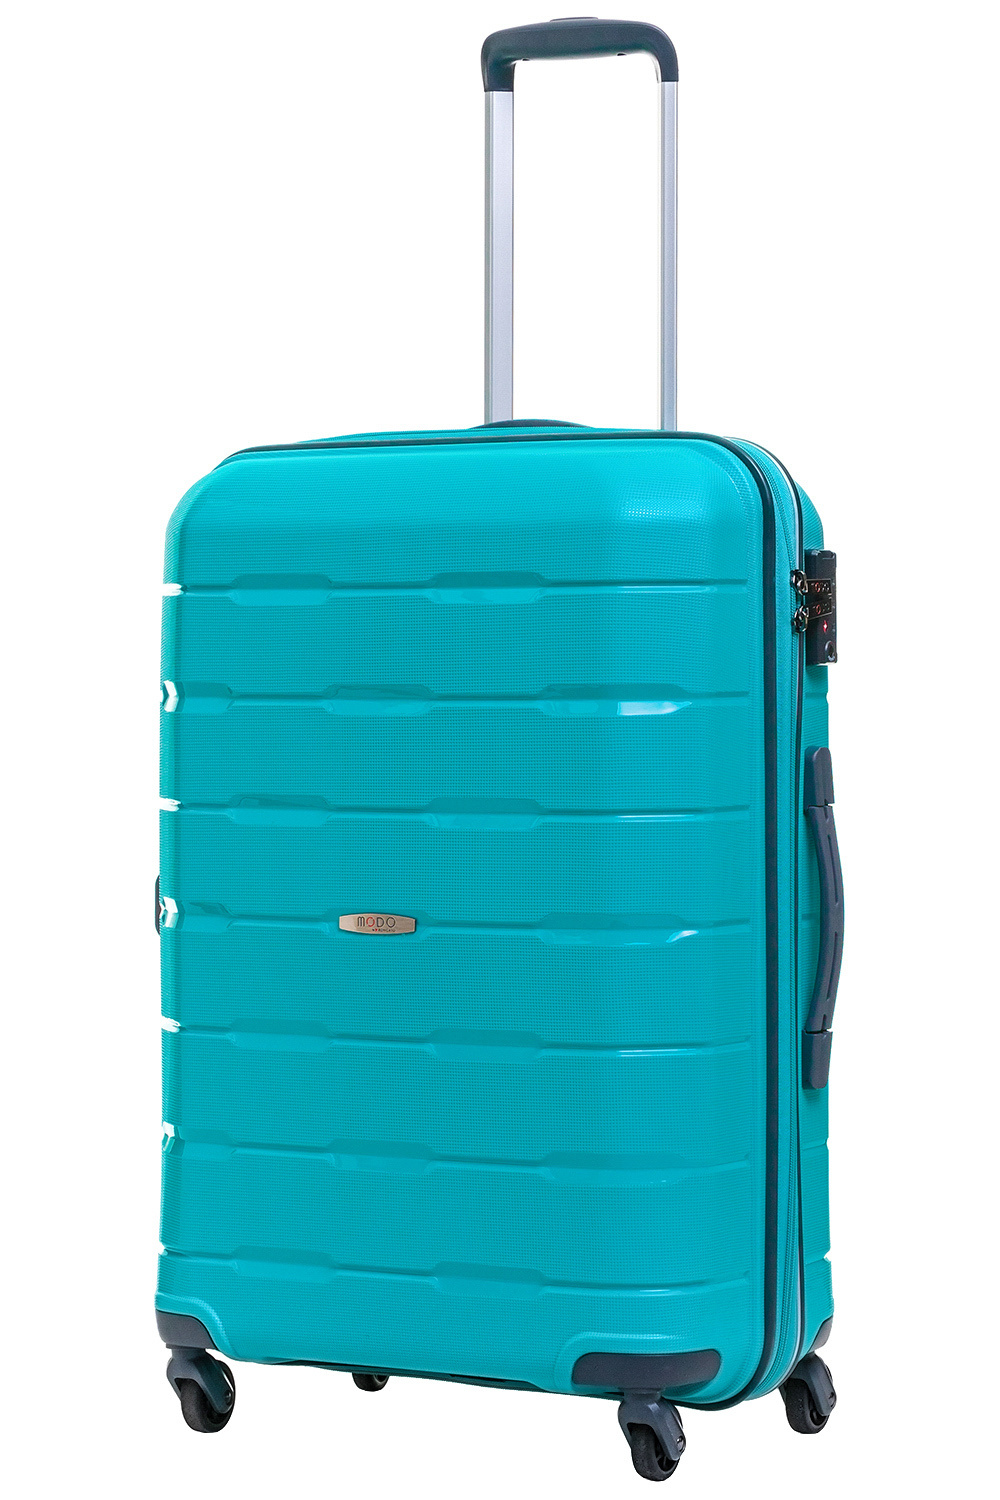 Размер чемодана средний M(56-70 см), что оптимально для путешествий на одну-две недели. 